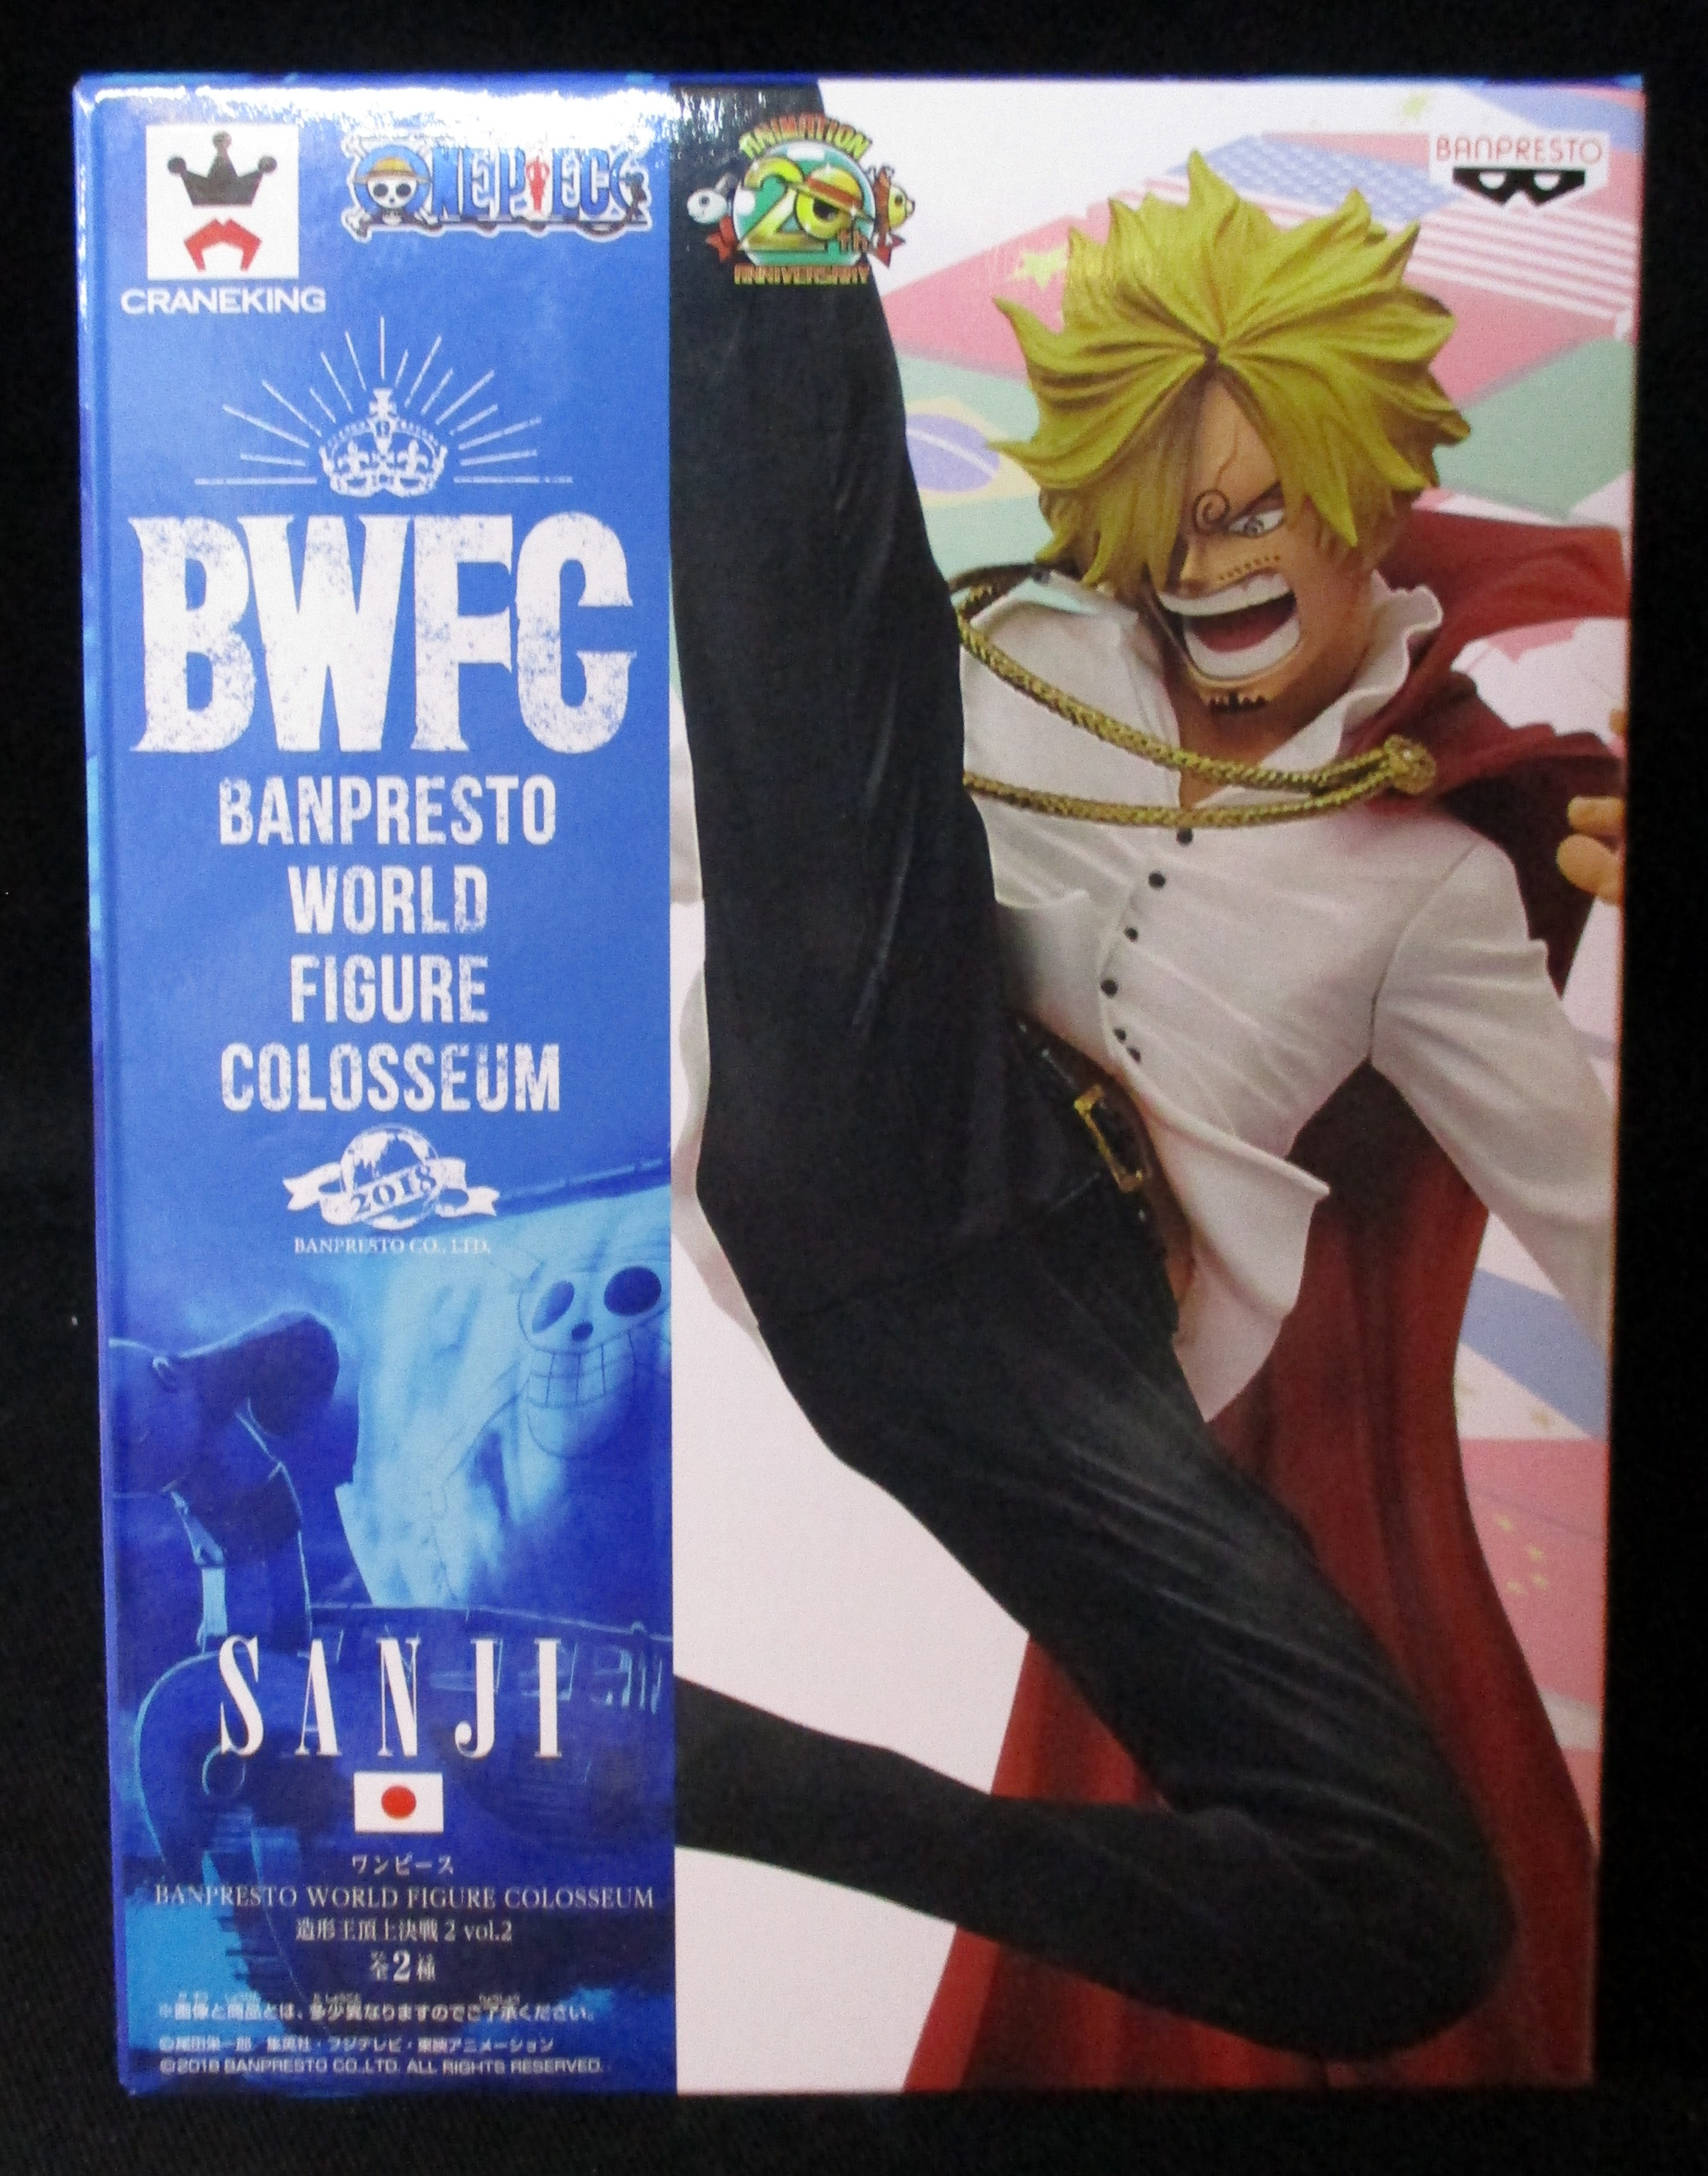 バンプレスト BANPRESTO WORLD FIGURE COLOSSEUM 造形王頂上決戦2 vol